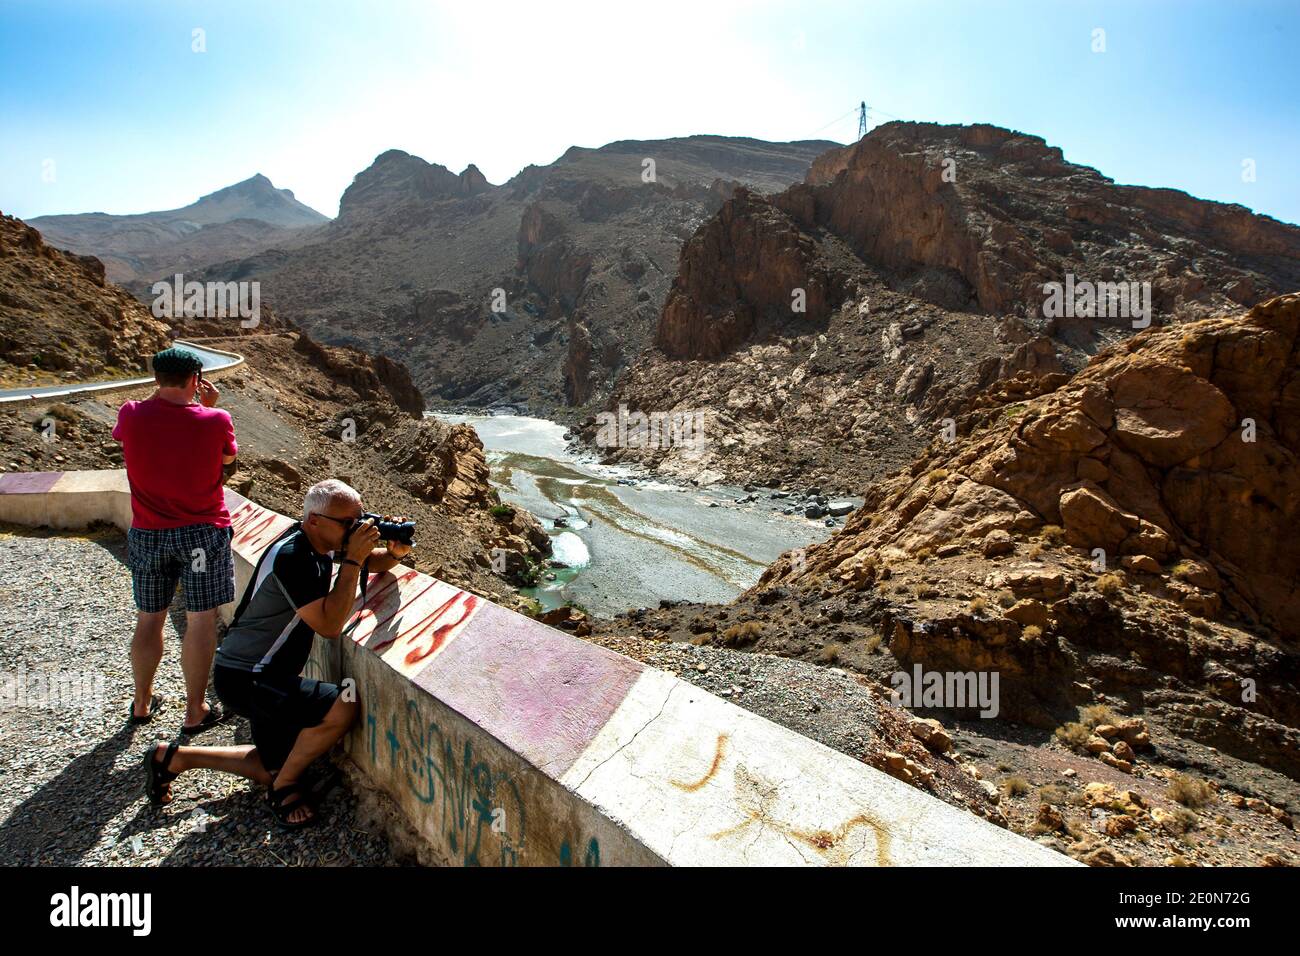 Turisti stranieri che fotografano il fiume Ziz nella valle di Ziz nelle montagne dell'Alto Atlante del Marocco. Foto Stock